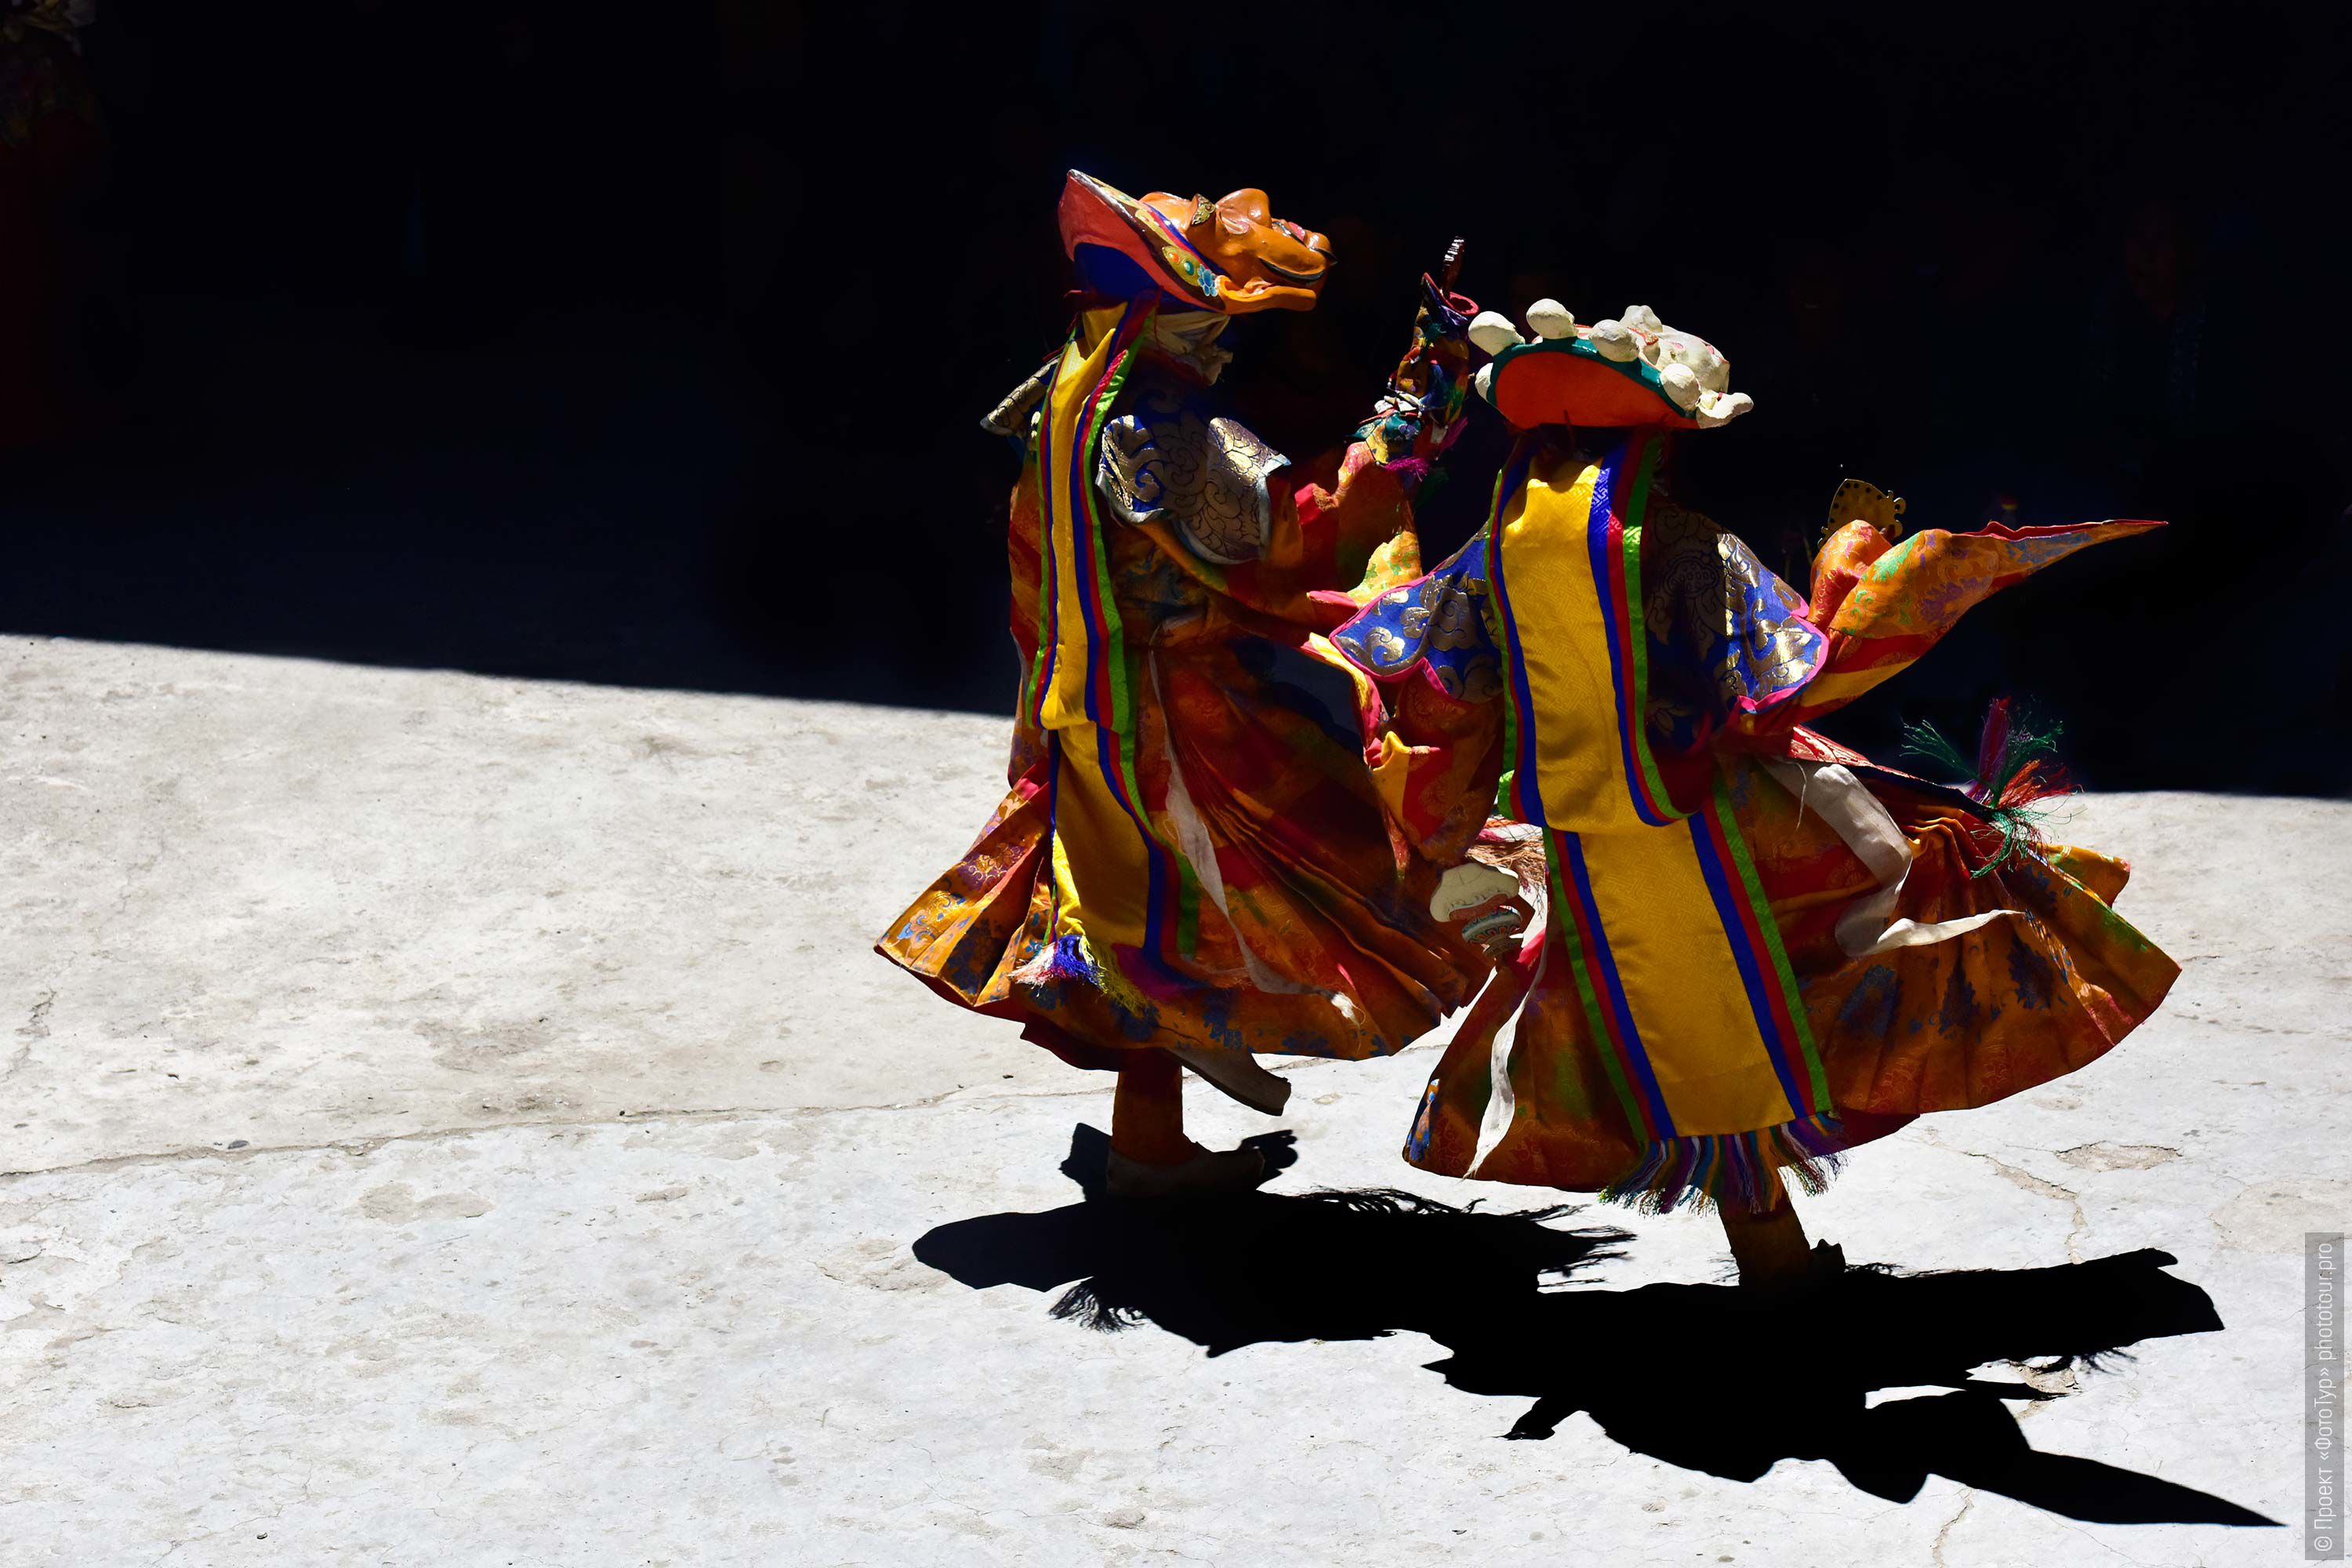 Танец Цам в буддийском монастыре Курча, фототур по Занскару, Северная Индия.